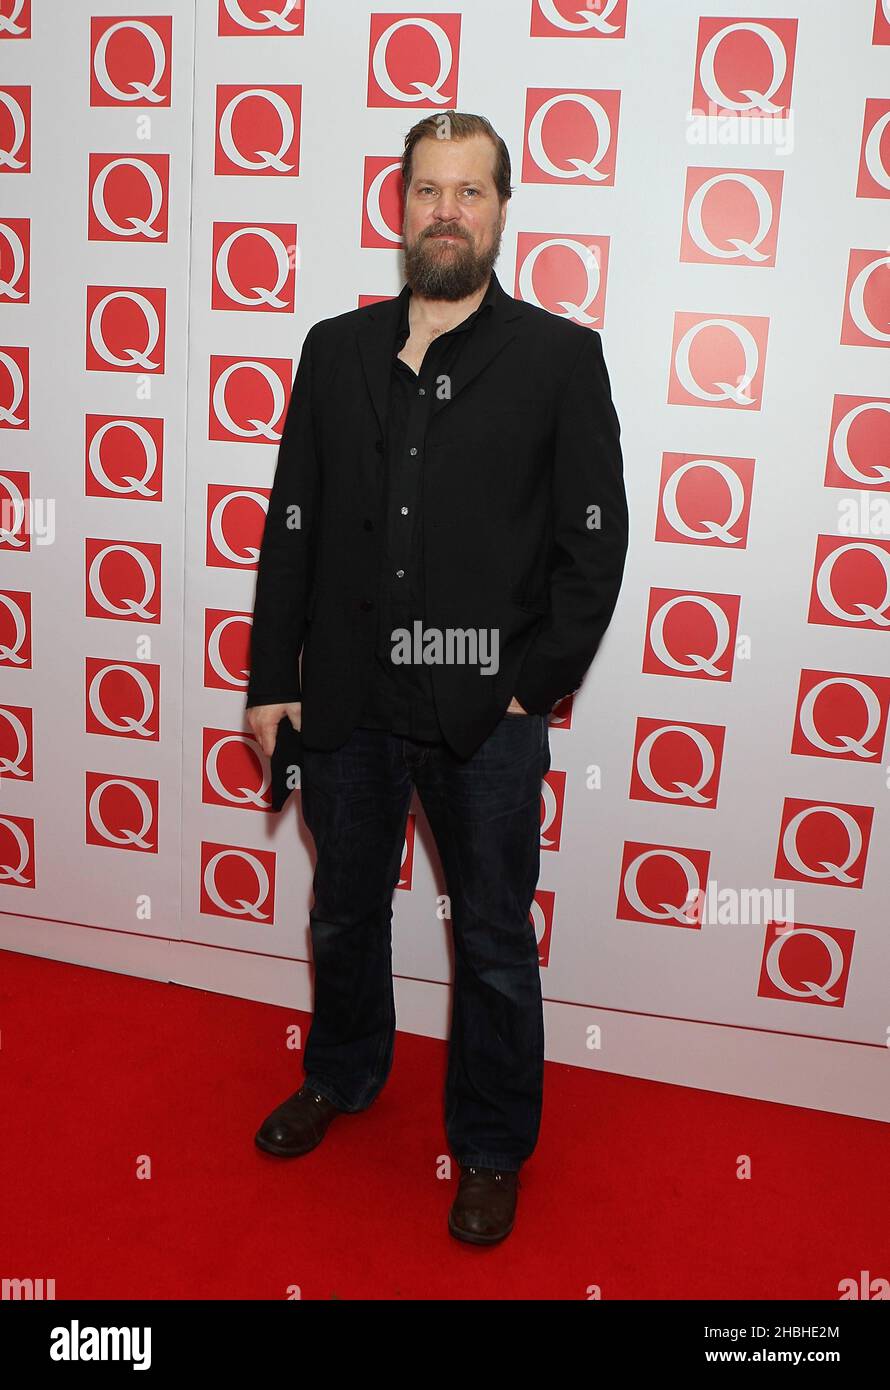 John Grant partecipa ai Q Awards al Grosvenor House Hotel di Londra. Foto Stock